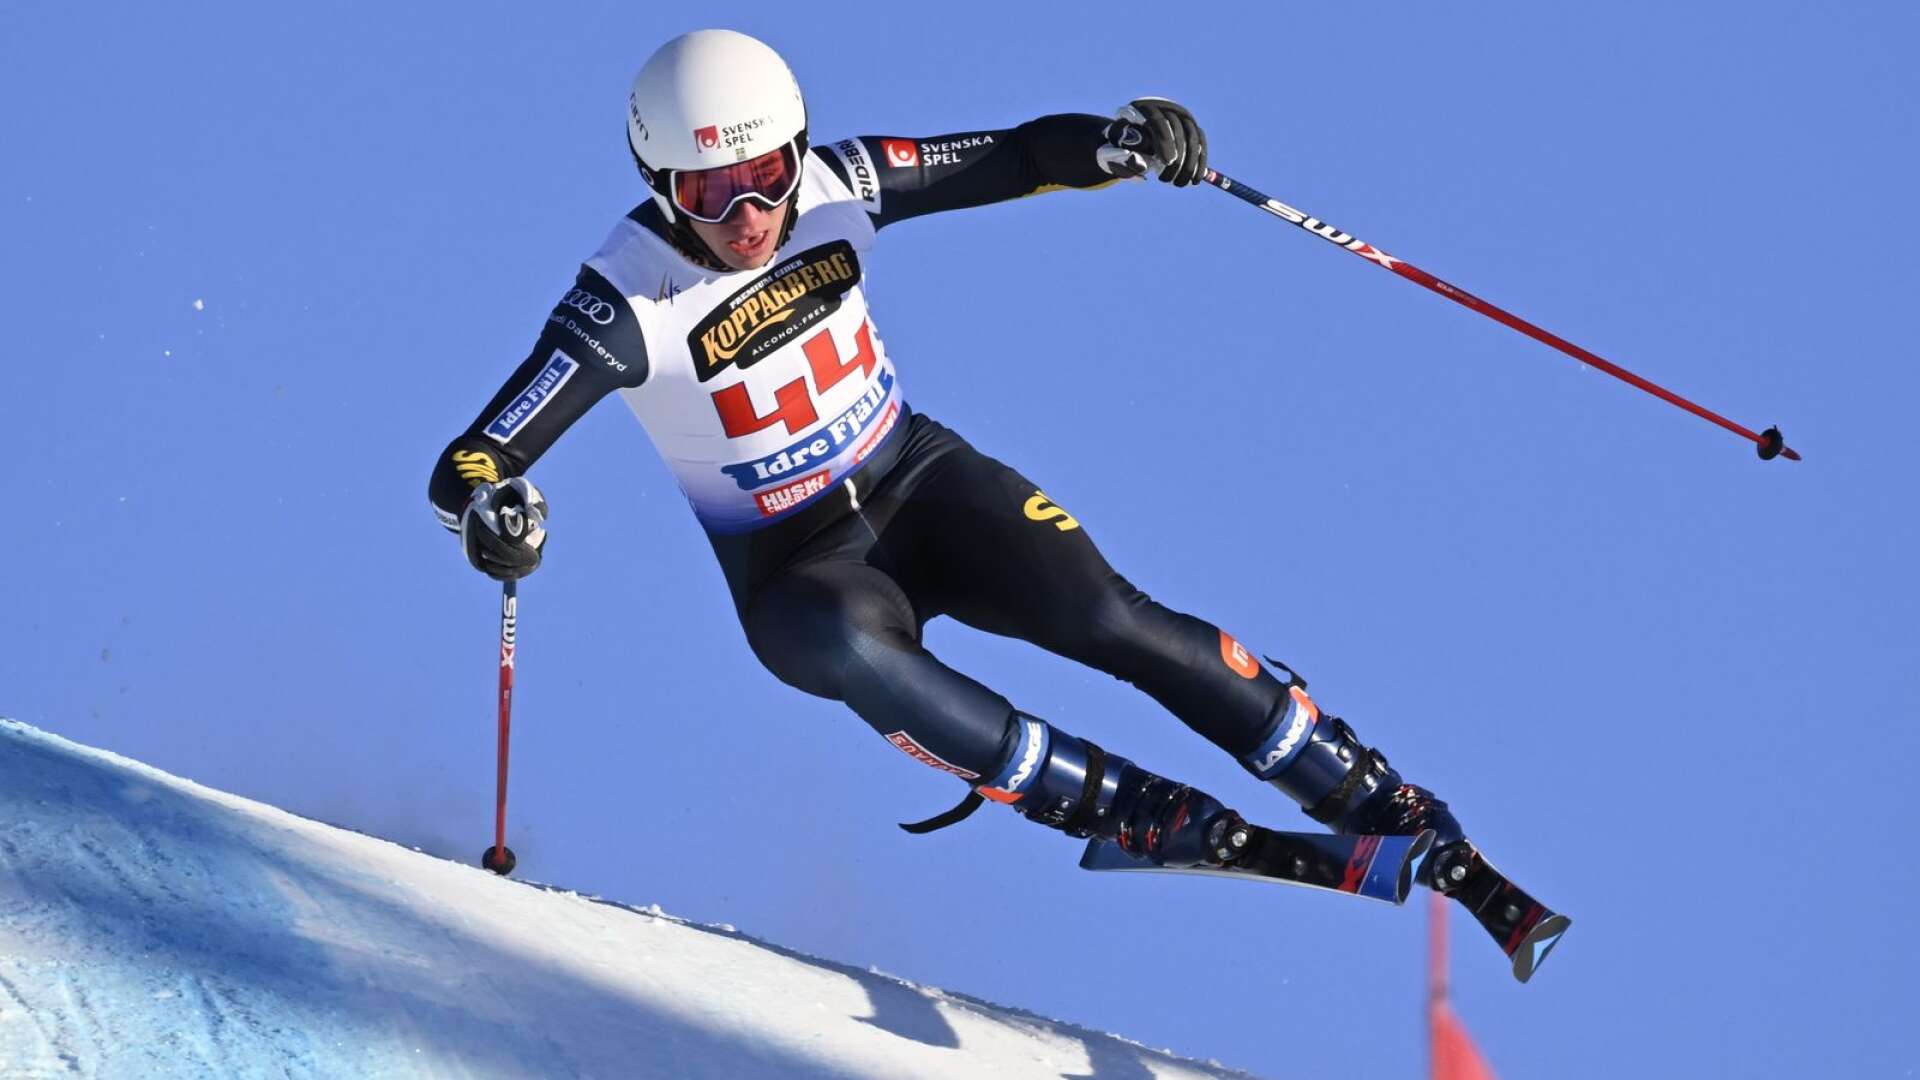 Här kommer Ponthus Kristensson flygande under fredagens kvalåk i skicrossvärldscupen i Idre.